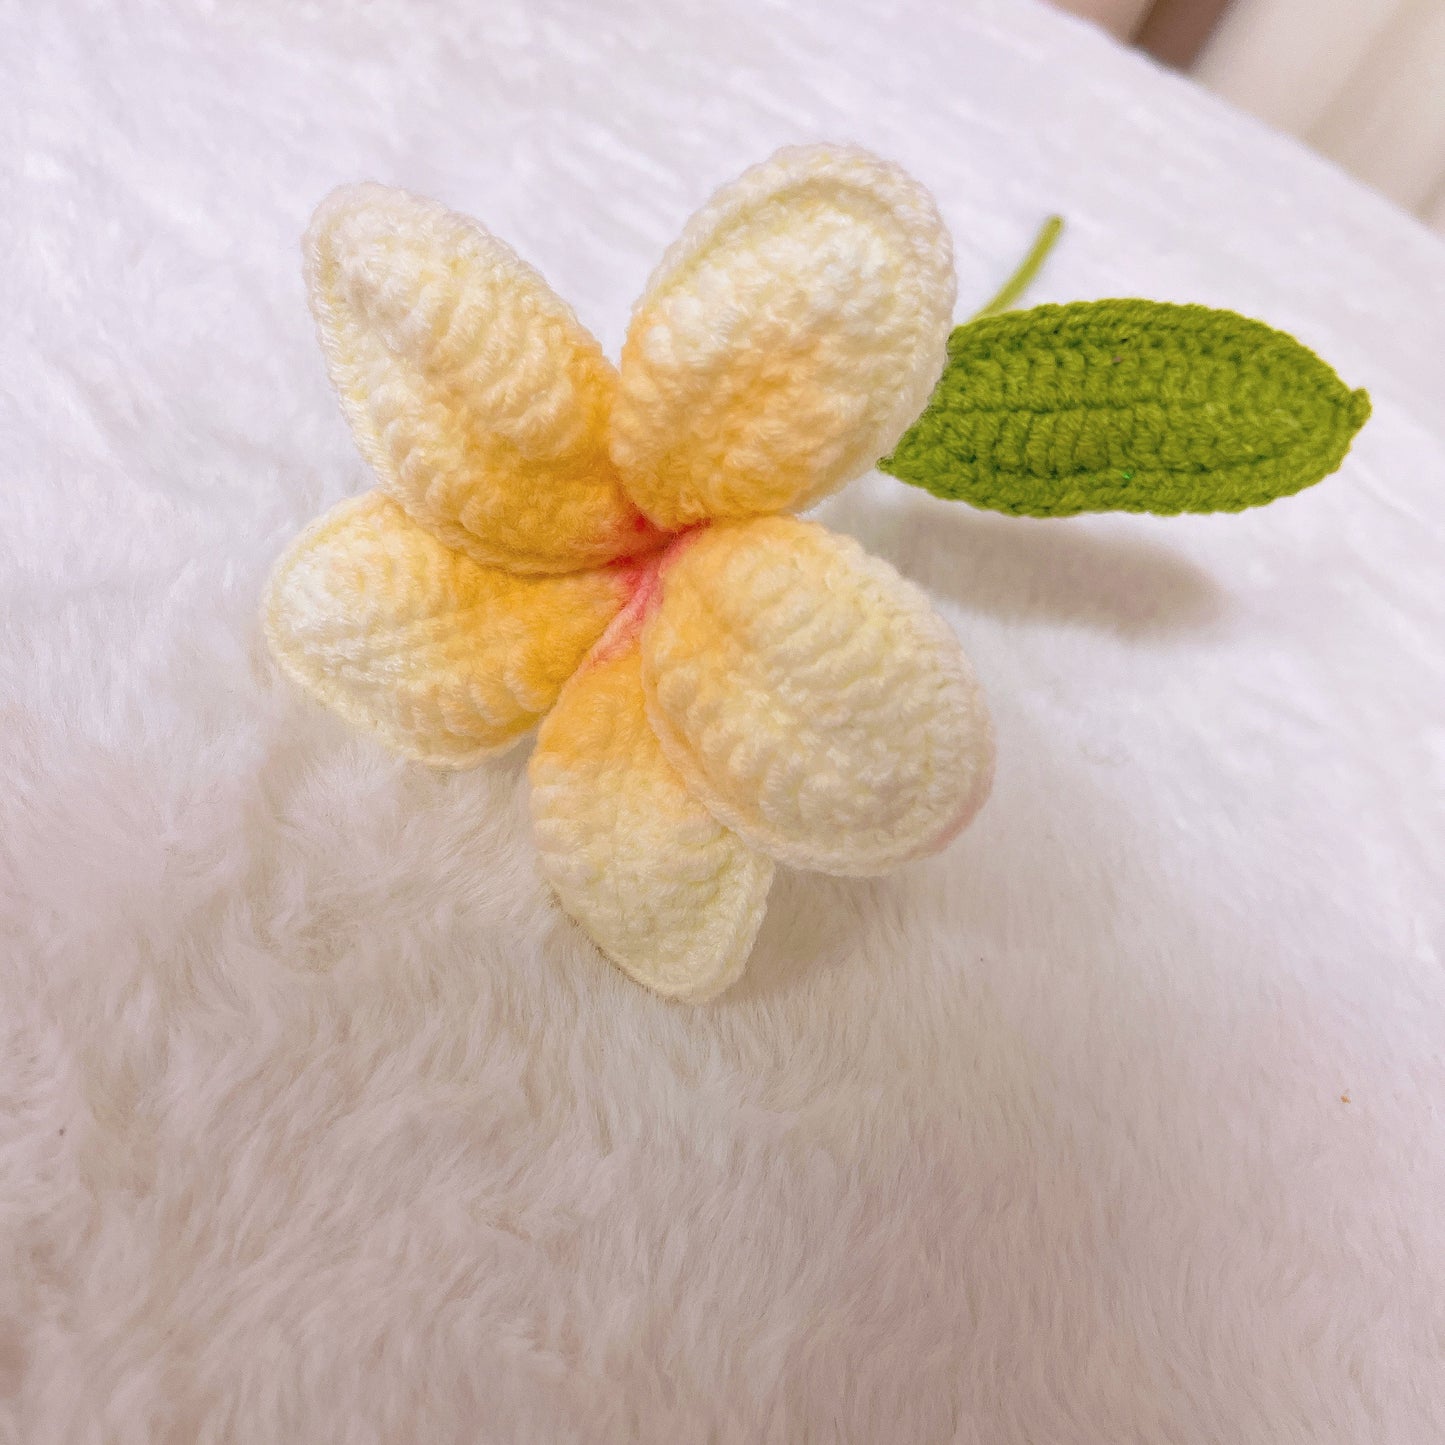 Crochet artisanal 12 Bouquet de frangipanier avec emballage blanc et argent - Pétales jaunes avec noyaux orange